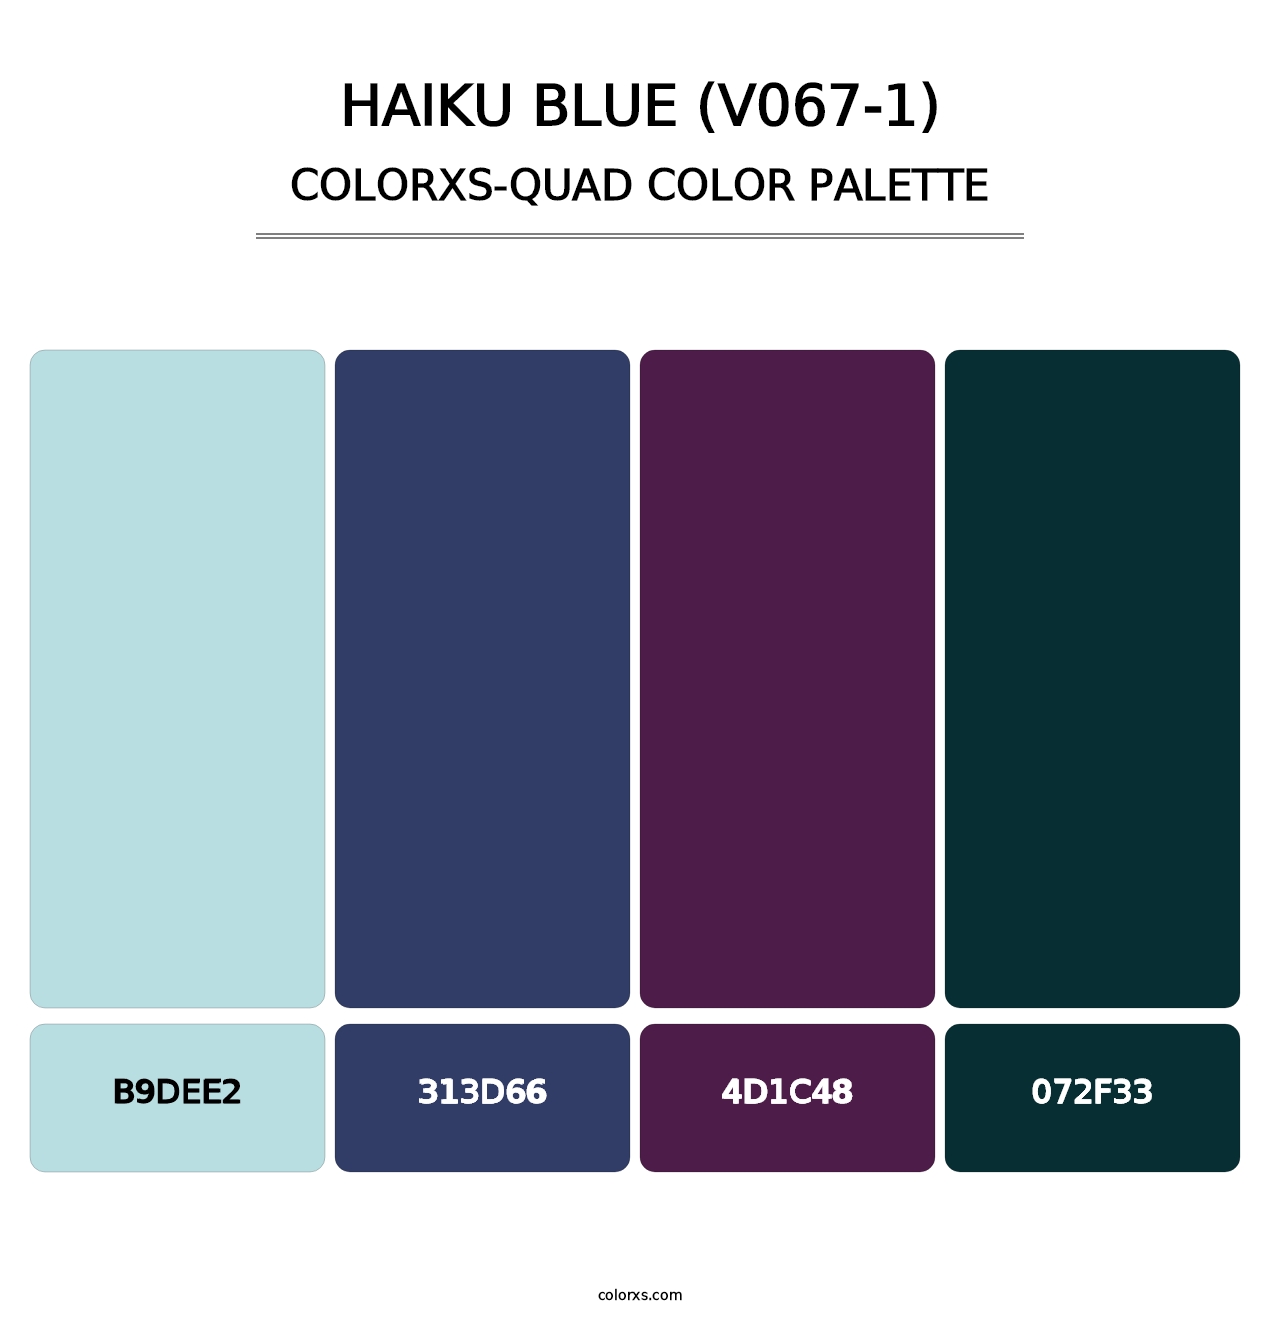 Haiku Blue (V067-1) - Colorxs Quad Palette